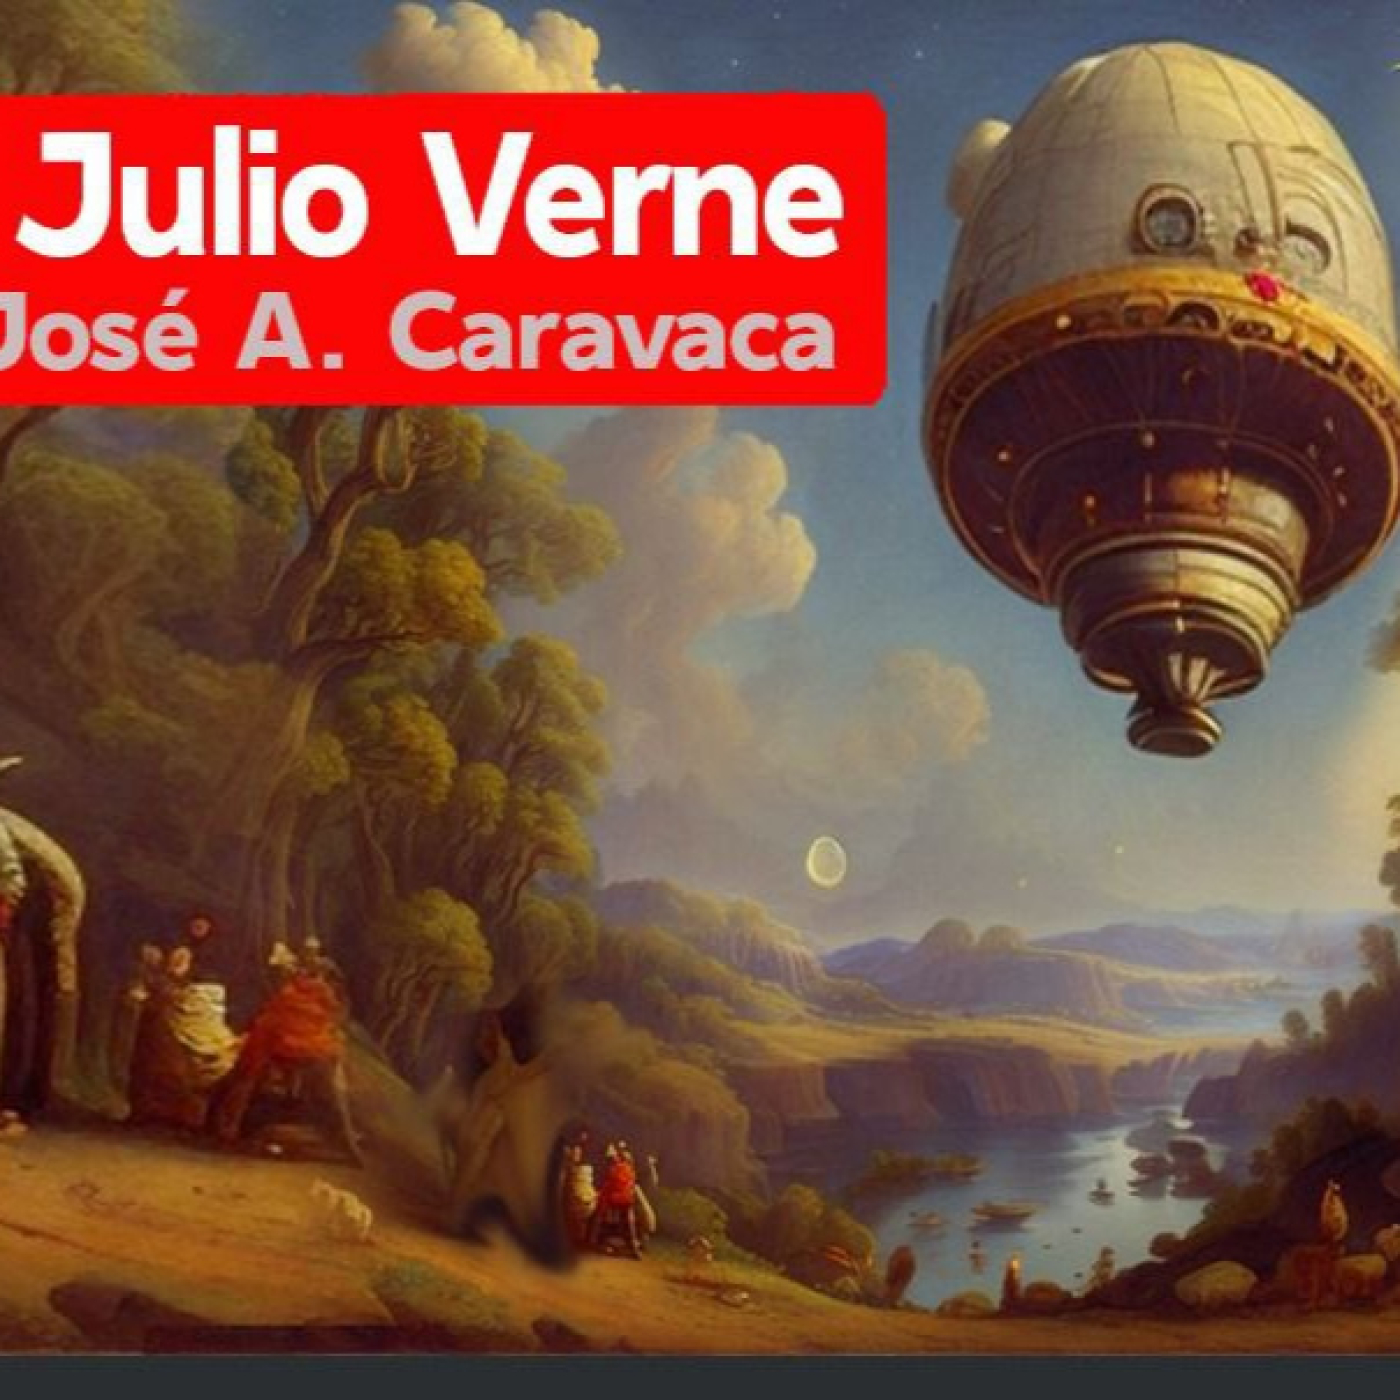 Misterios en Viernes 437 Los ovnis de Julio Verne con Jose Antonio Caravaca